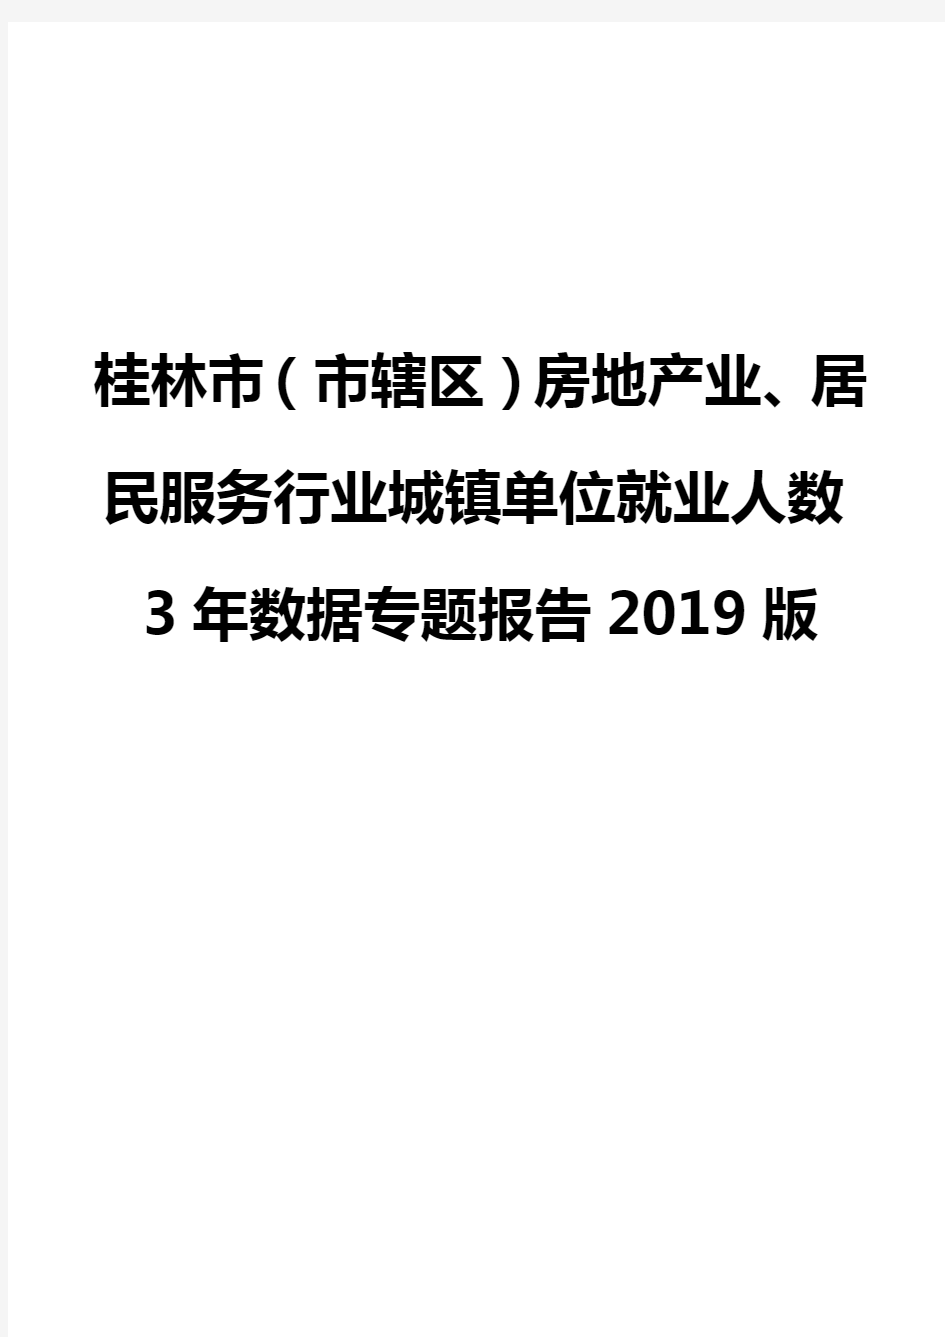 桂林市(市辖区)房地产业、居民服务行业城镇单位就业人数3年数据专题报告2019版